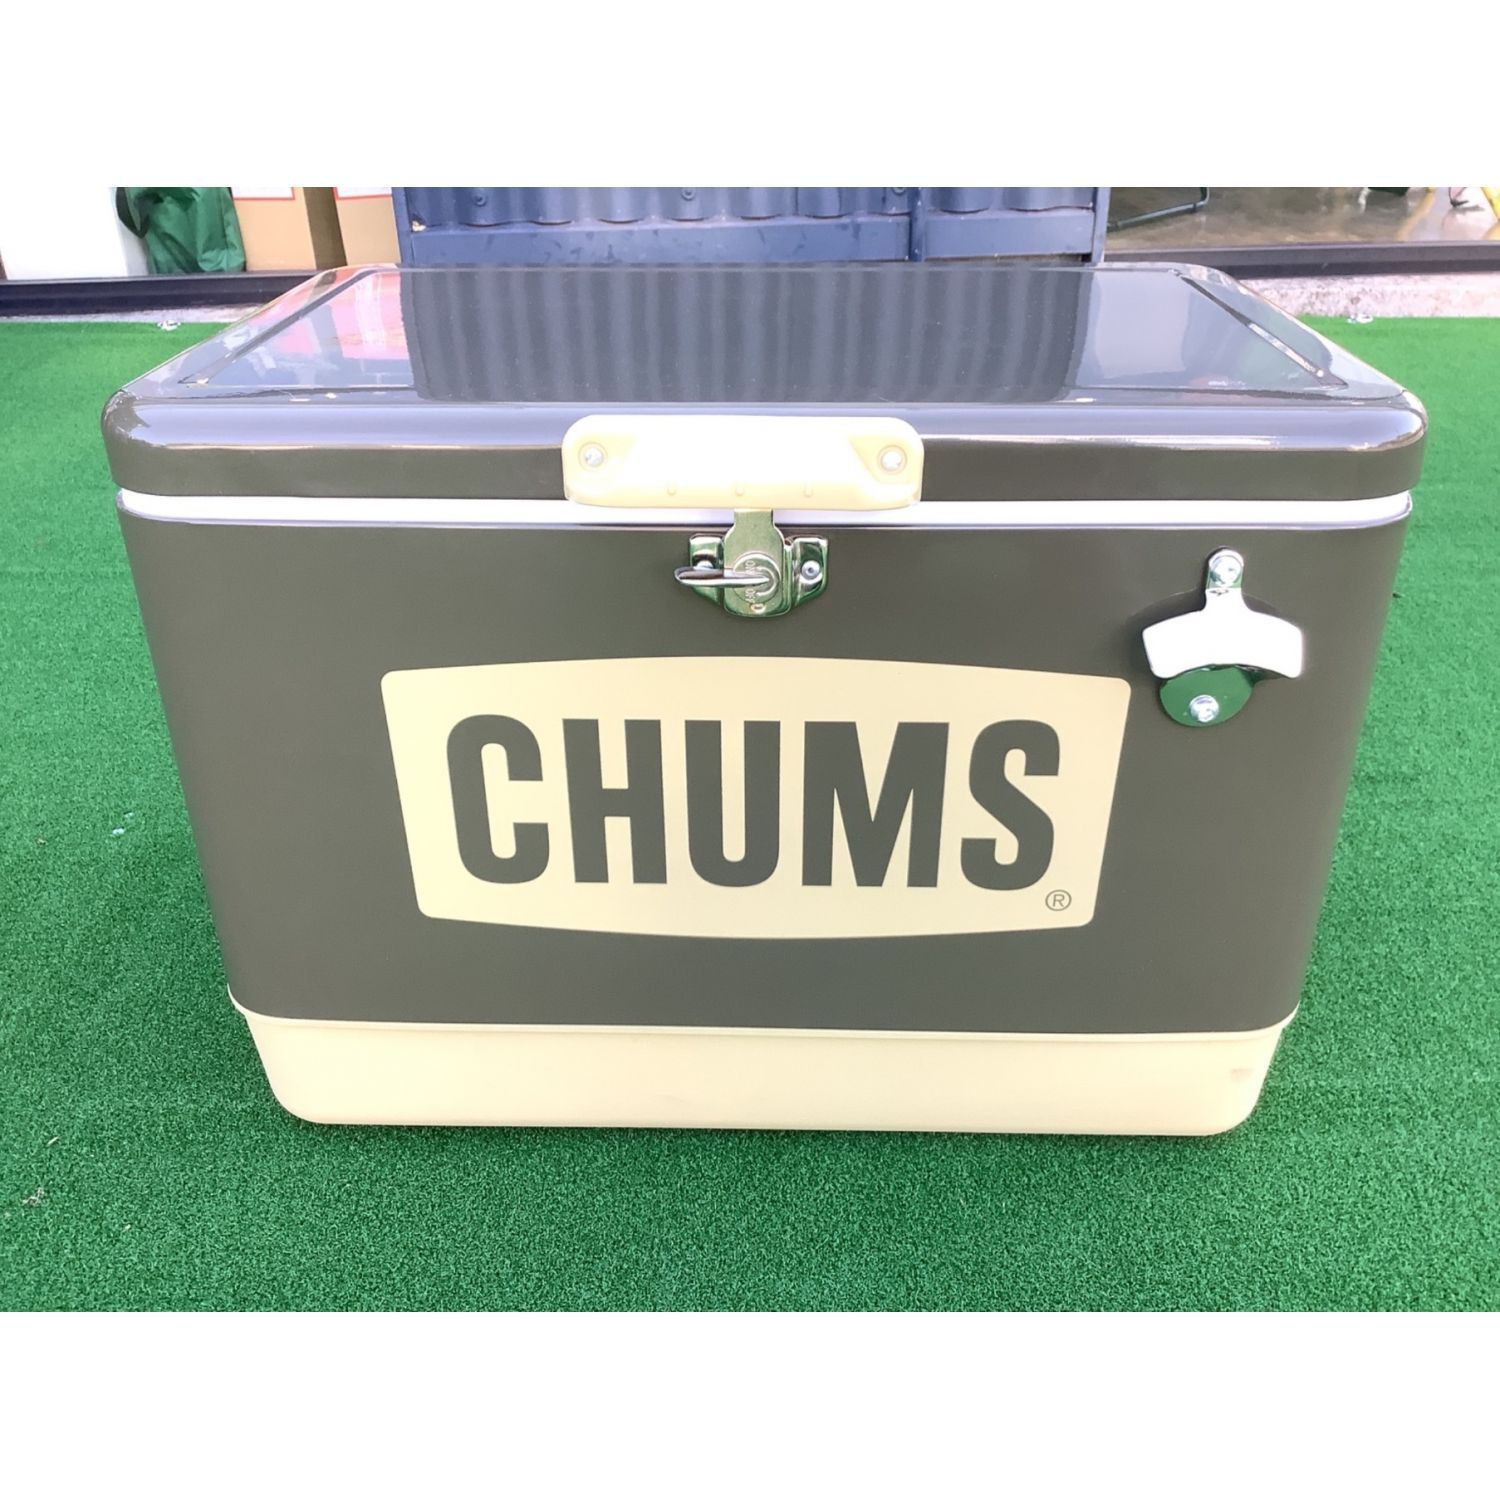 CHUMS (チャムス) クーラーボックス 54L カーキ スチールクーラー